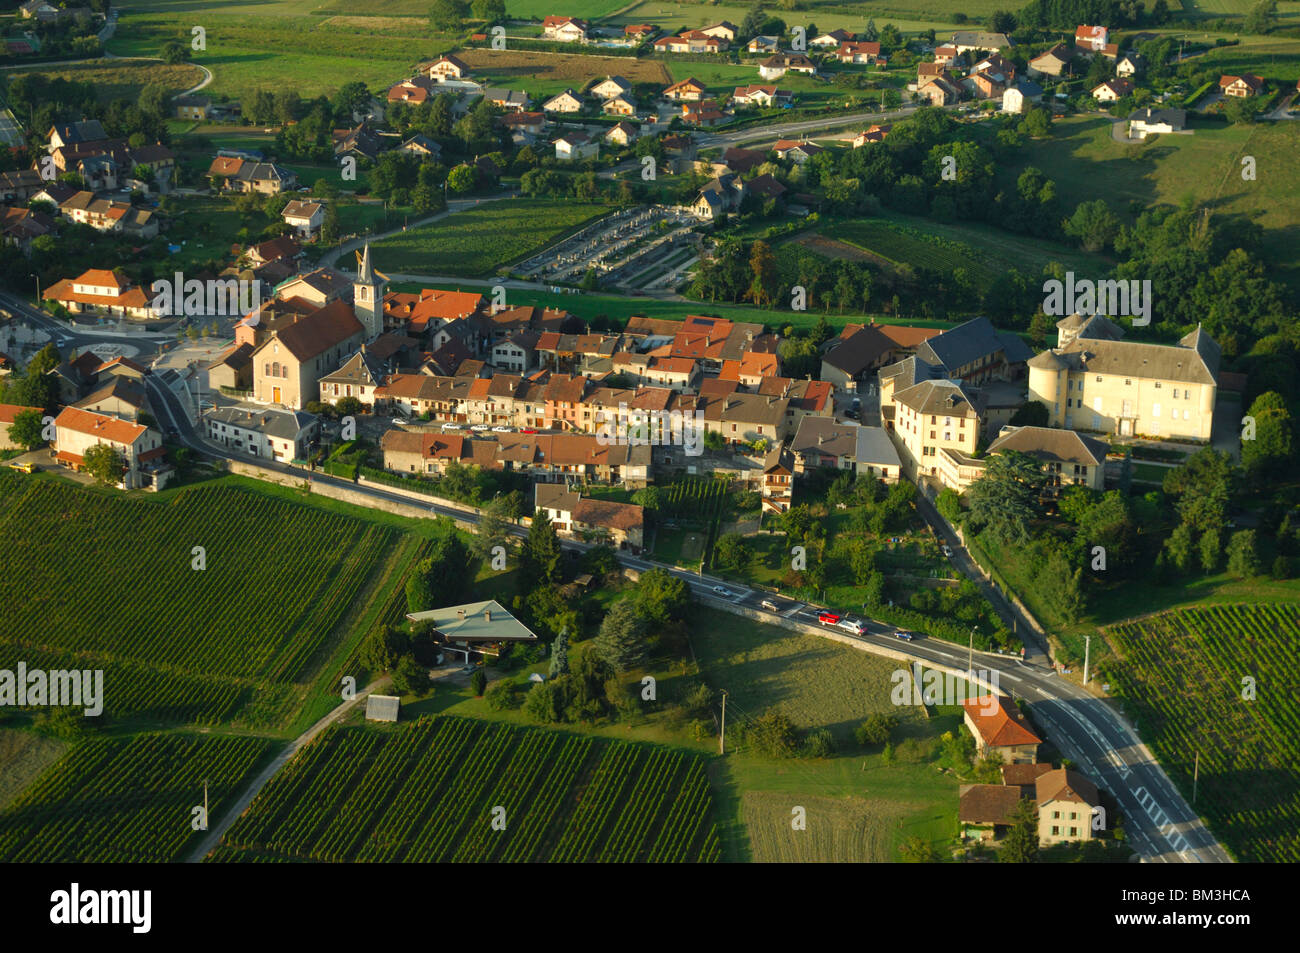 Vue aérienne du village des Marches. Savoie (Savoie), région Rhône-Alpes, Alpes, France Banque D'Images